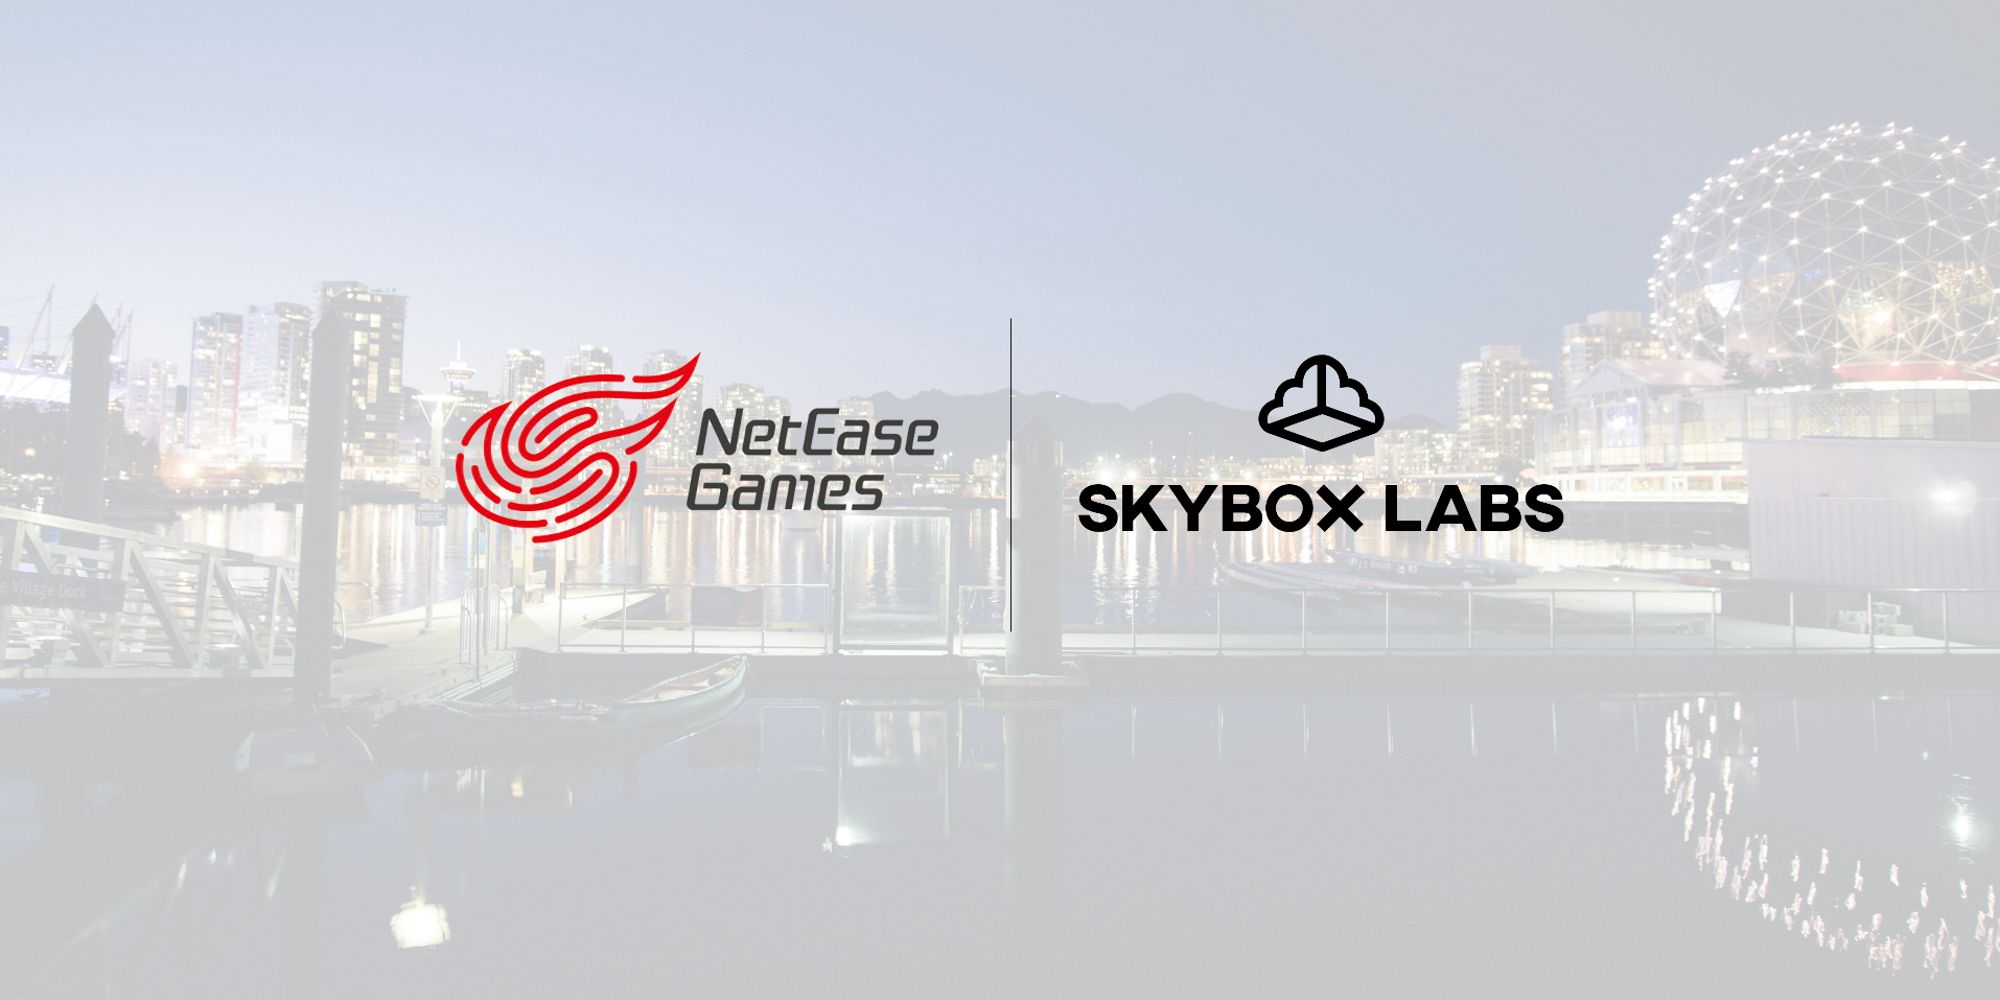 NetEase SkyBox